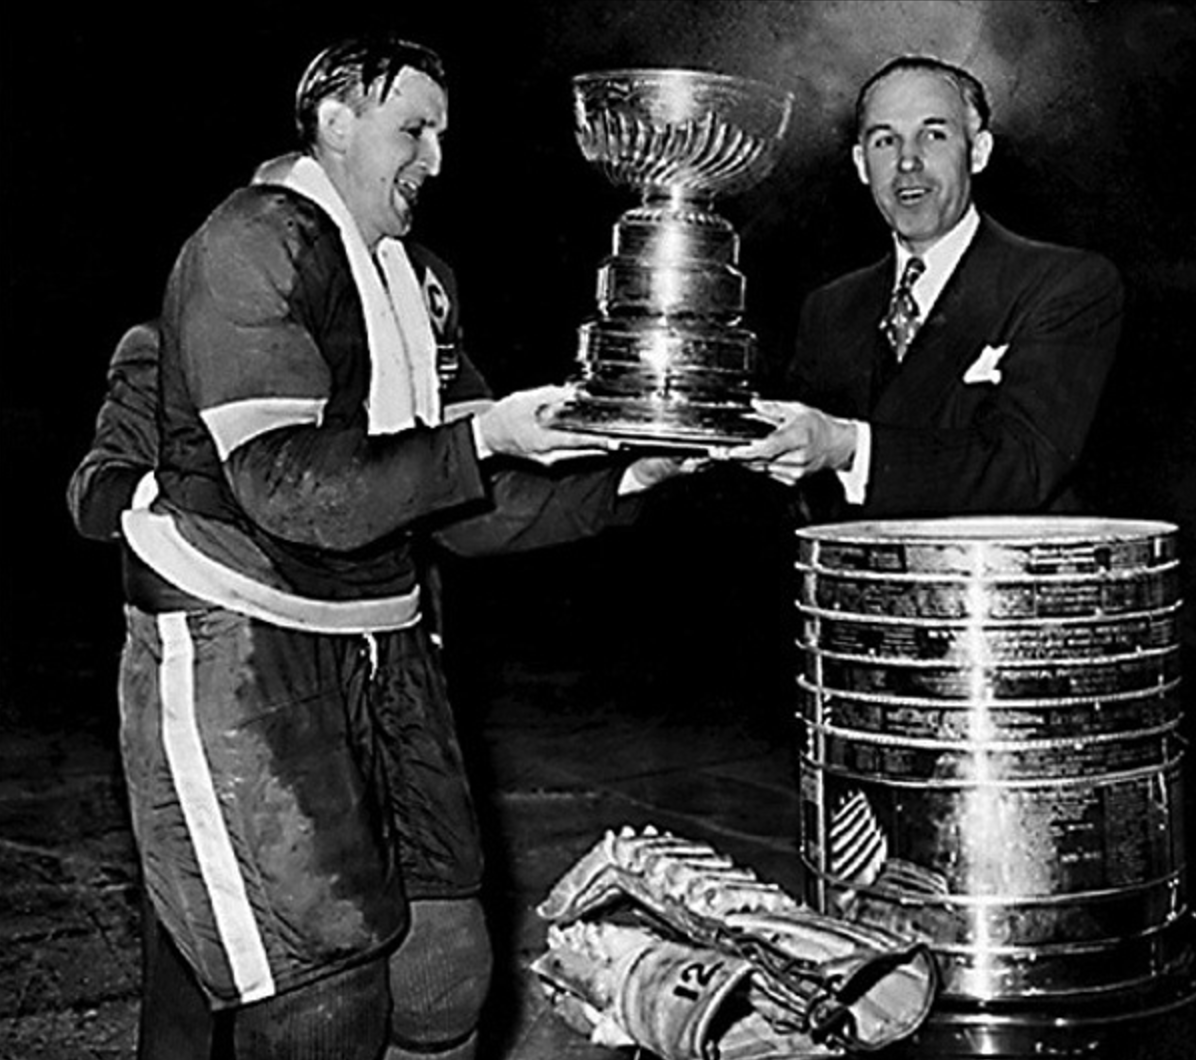 1943–44 Detroit Red Wings season - Wikipedia